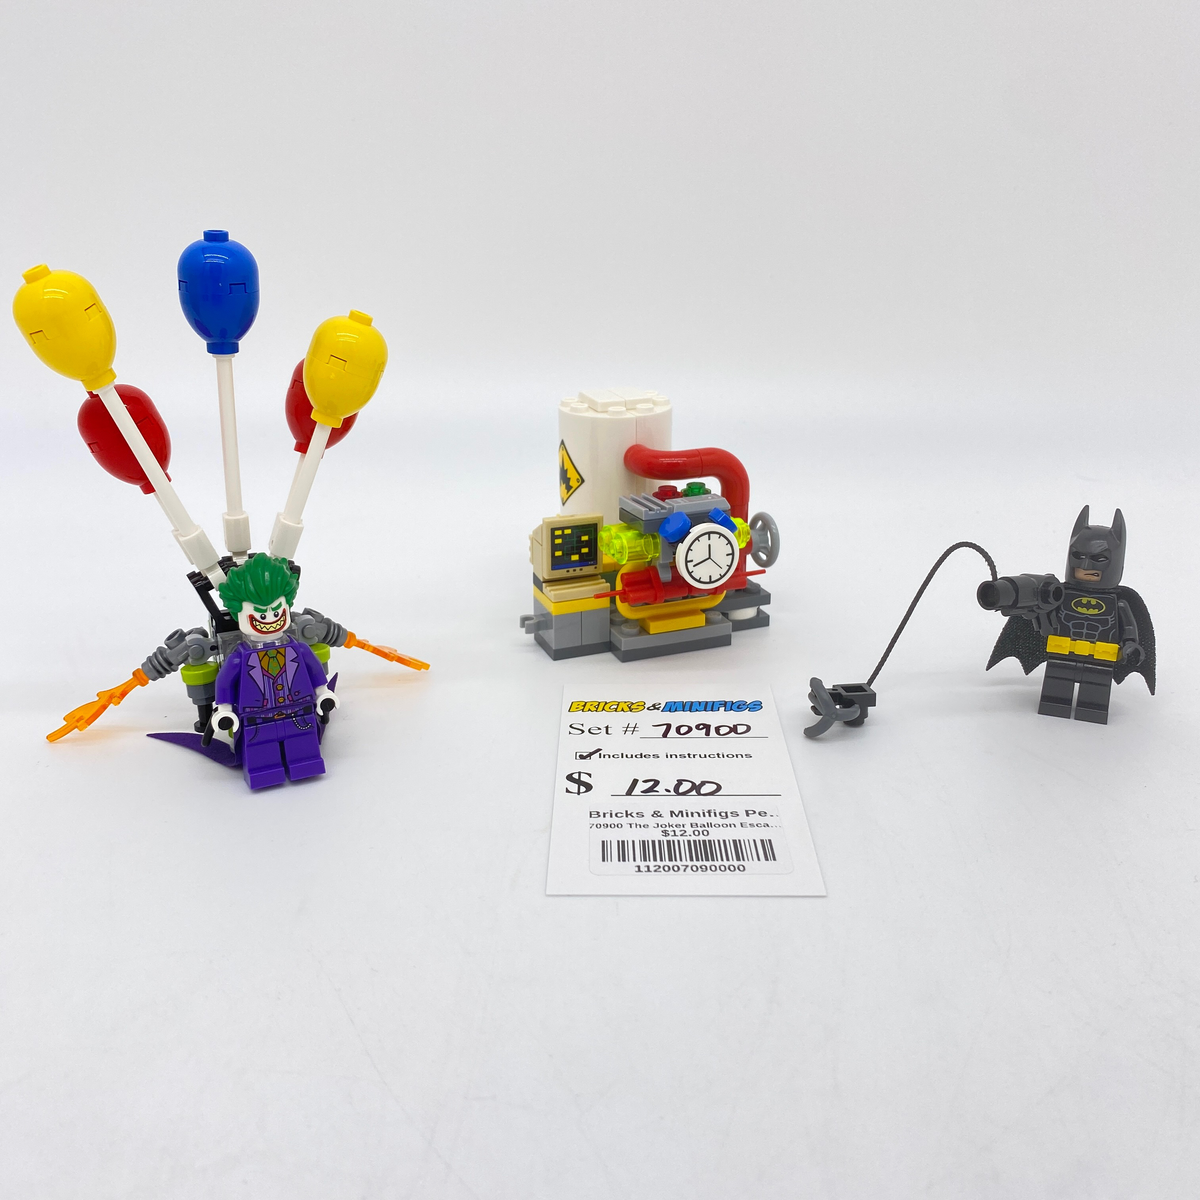 The LEGO Batman Movie - The Joker Balloon Escape (70900) 